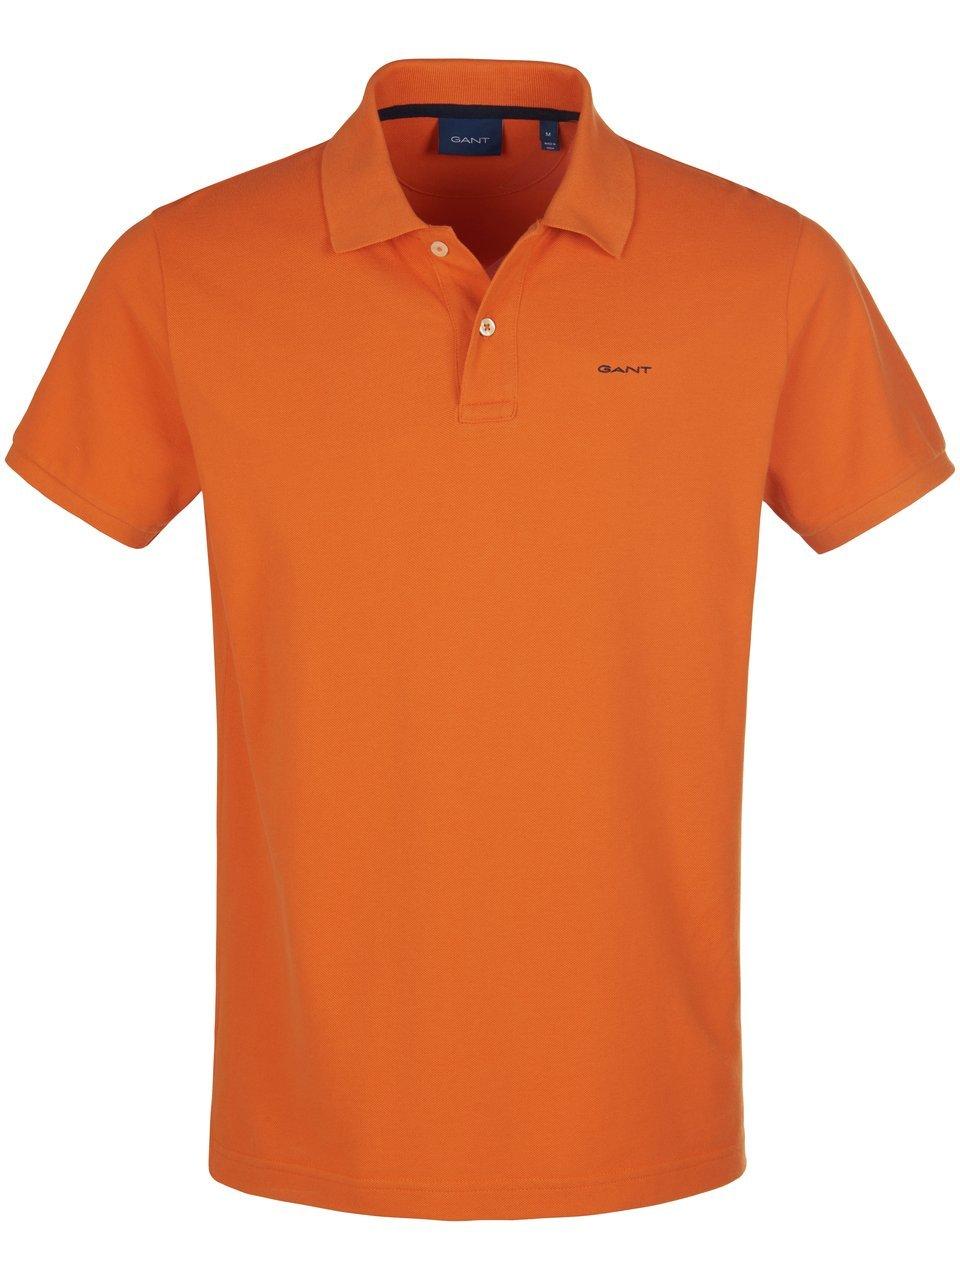 Poloshirt 100% katoen Van GANT oranje